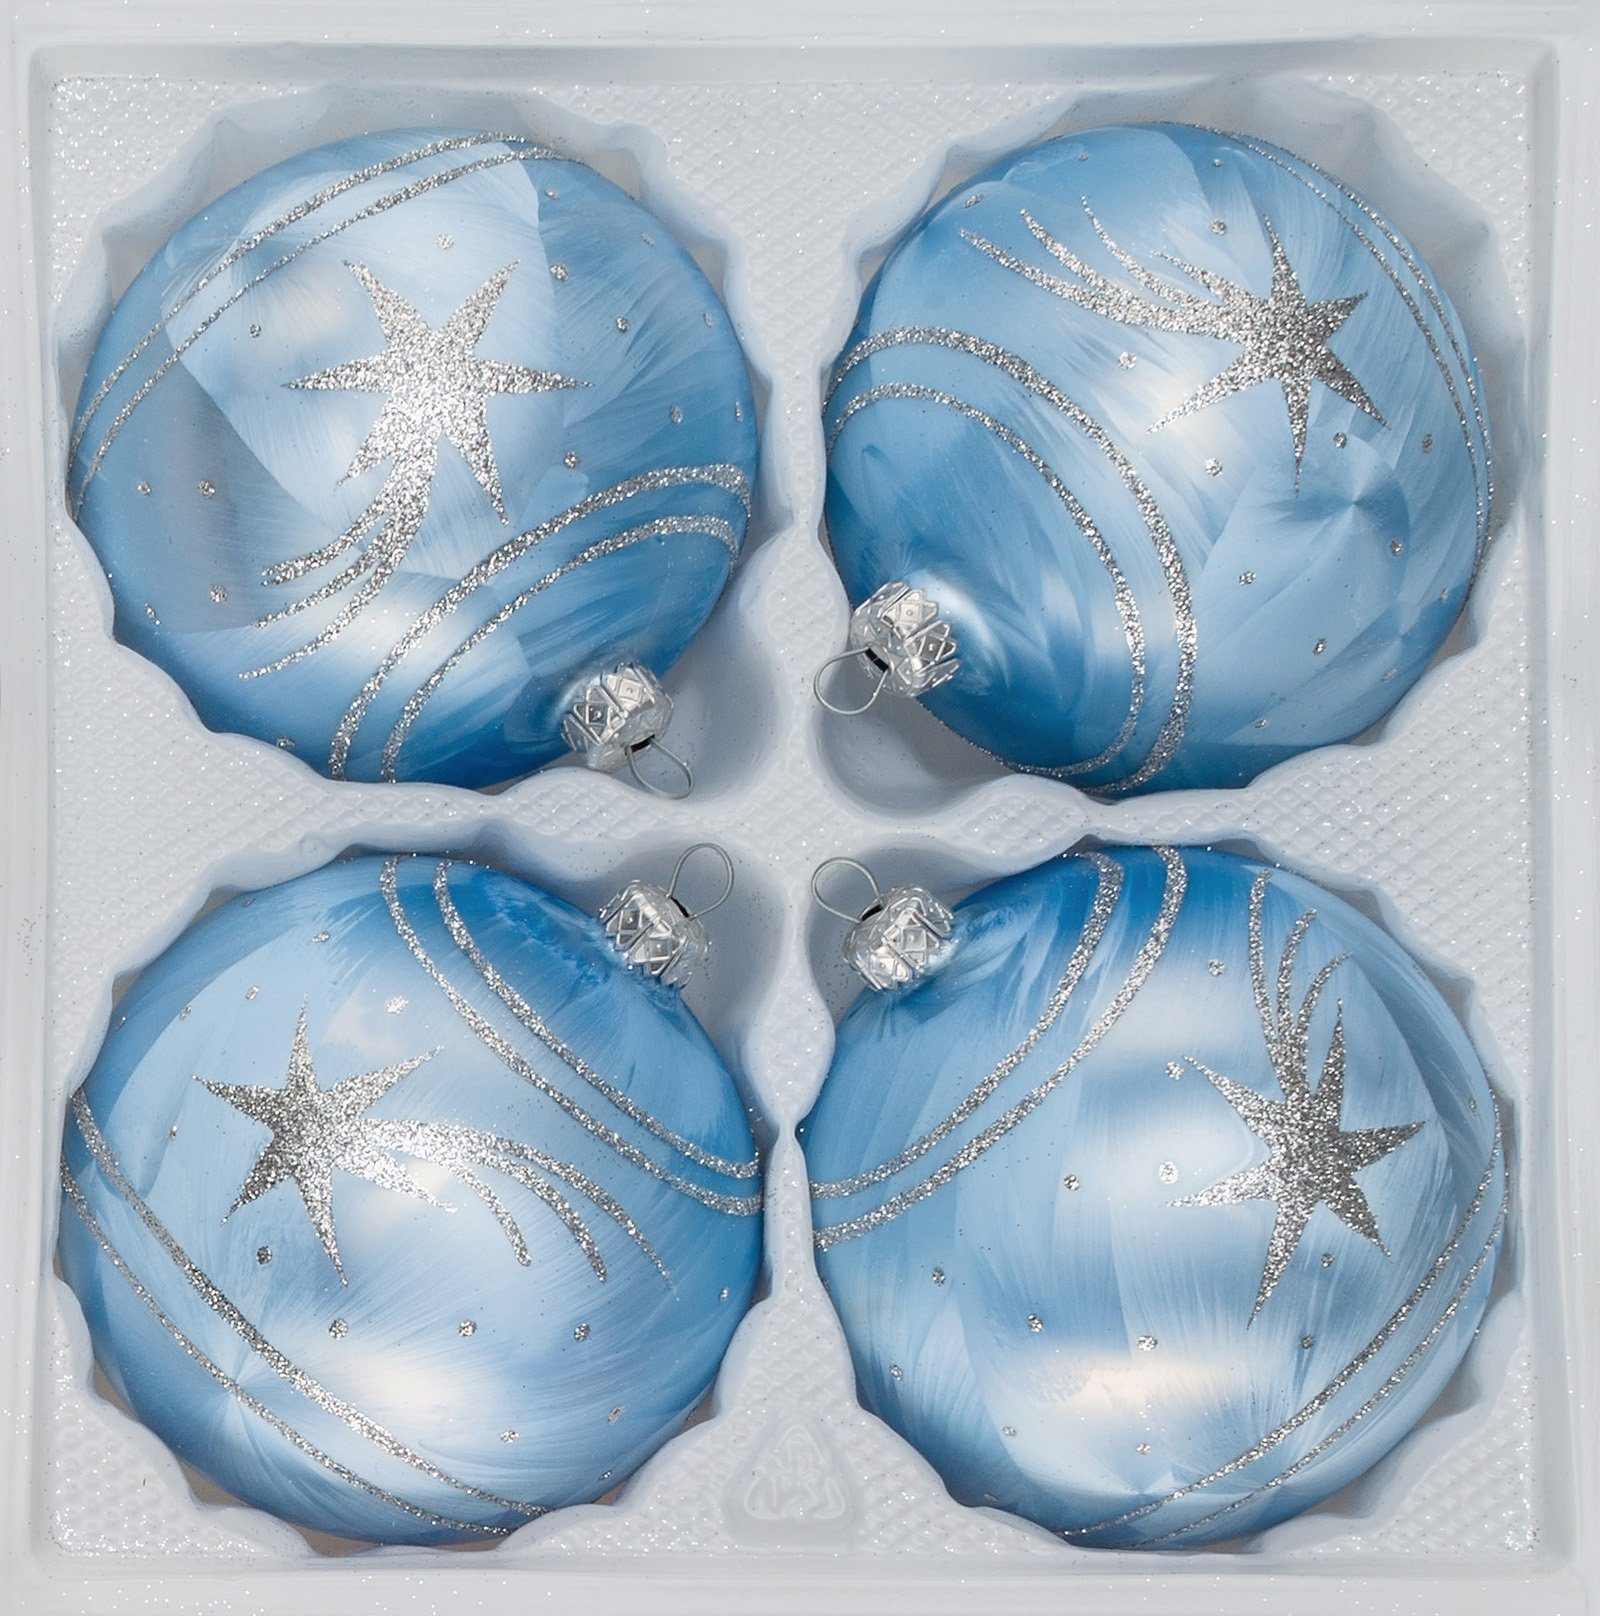 Navidacio Weihnachtsbaumkugel 4 tlg. Glas-Weihnachtskugeln Set 12cm Ø in Ice Blau Silber Komet